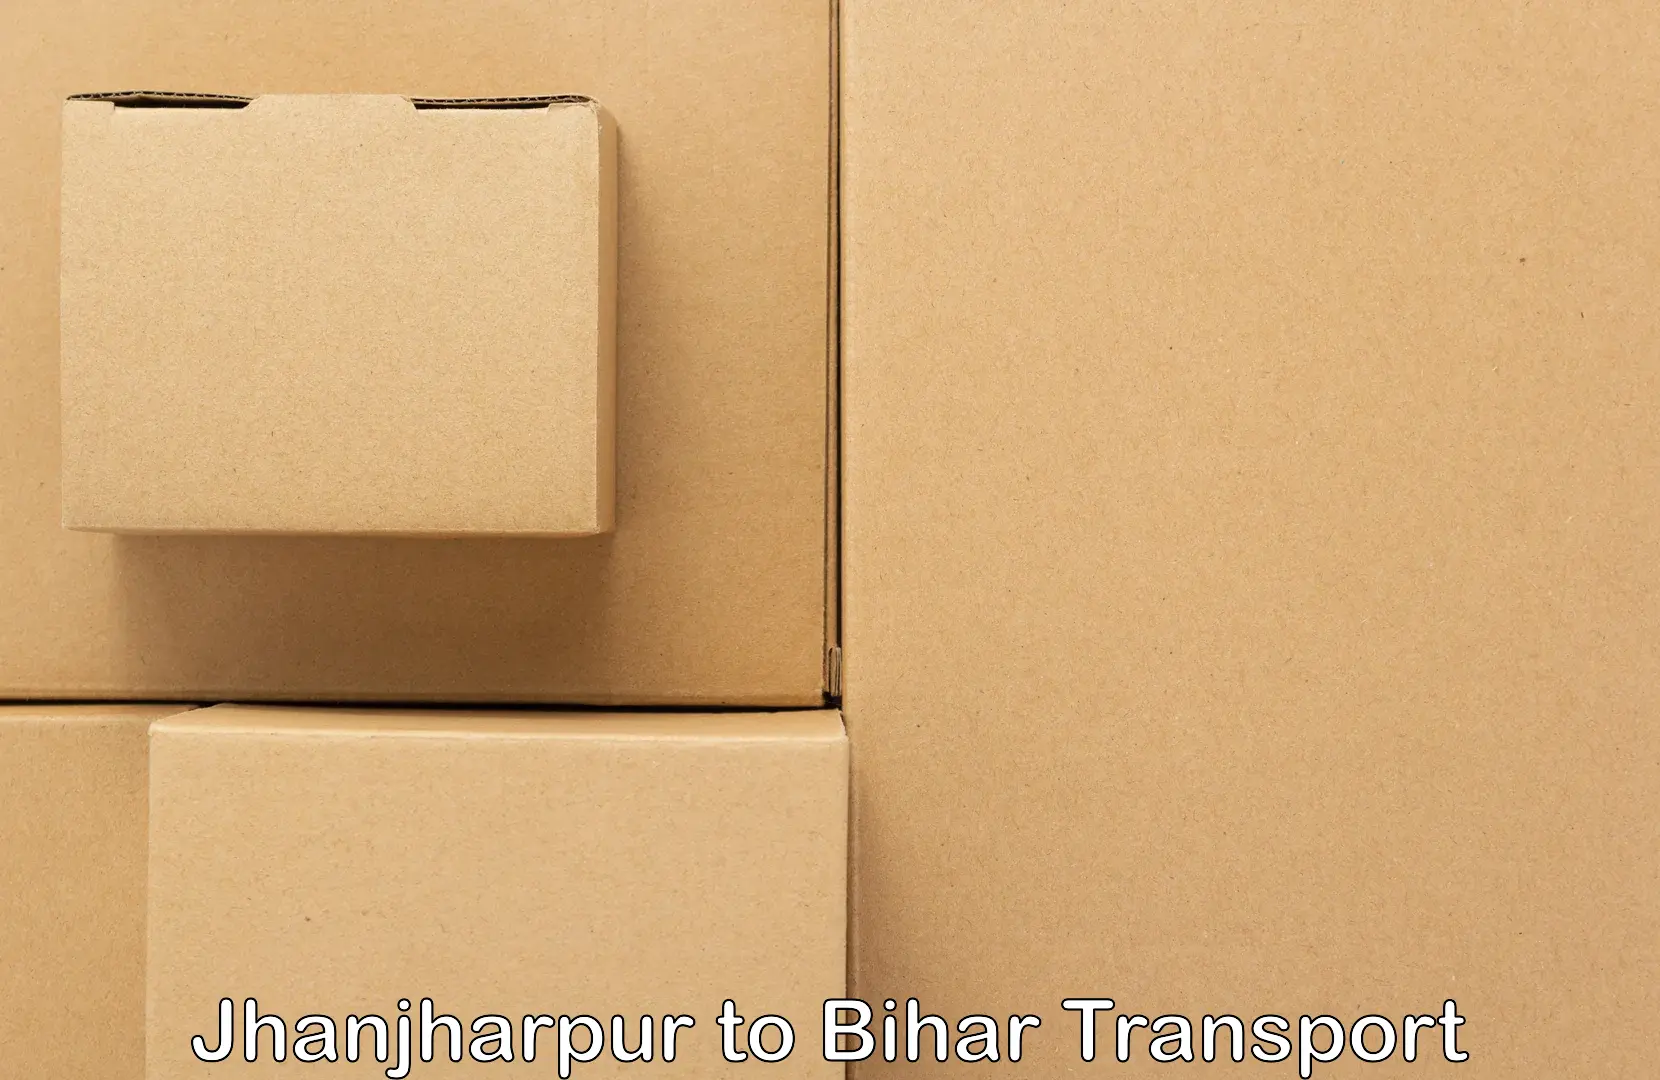 Cargo transport services Jhanjharpur to Sheikhpura